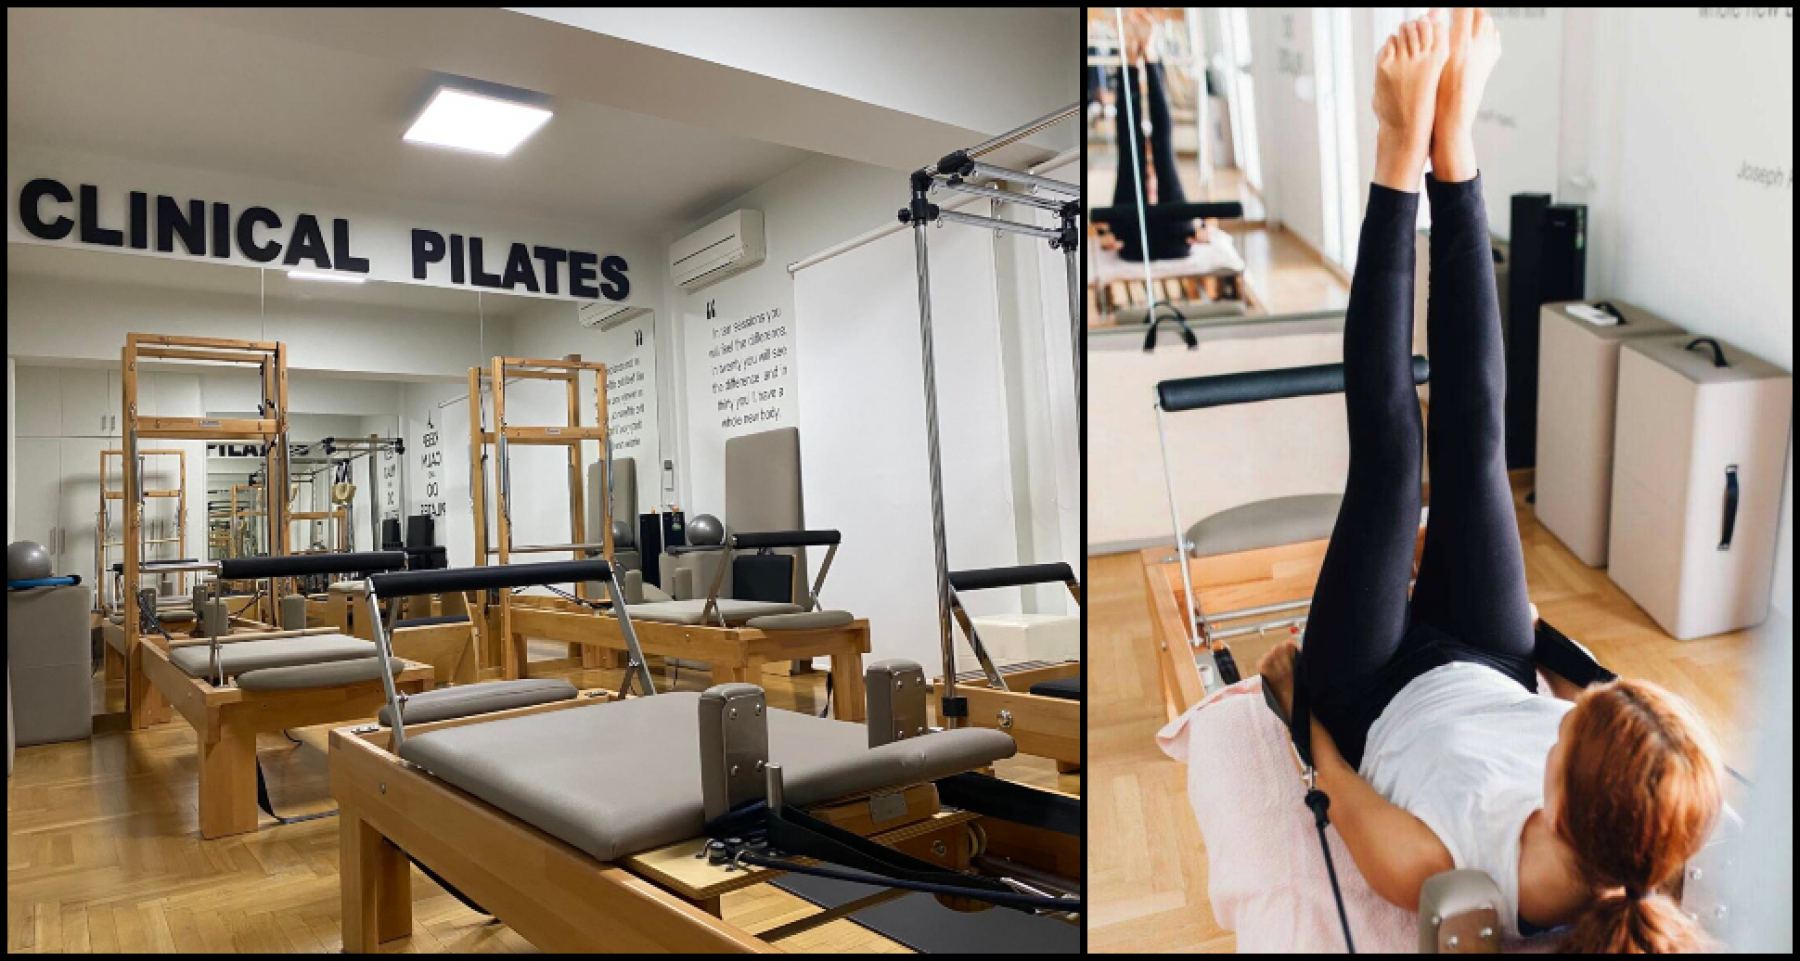 Λαμία: Clinical Pilates με νέα θεραπευτικά προγράμματα, μόνο στο «MTS Center»!